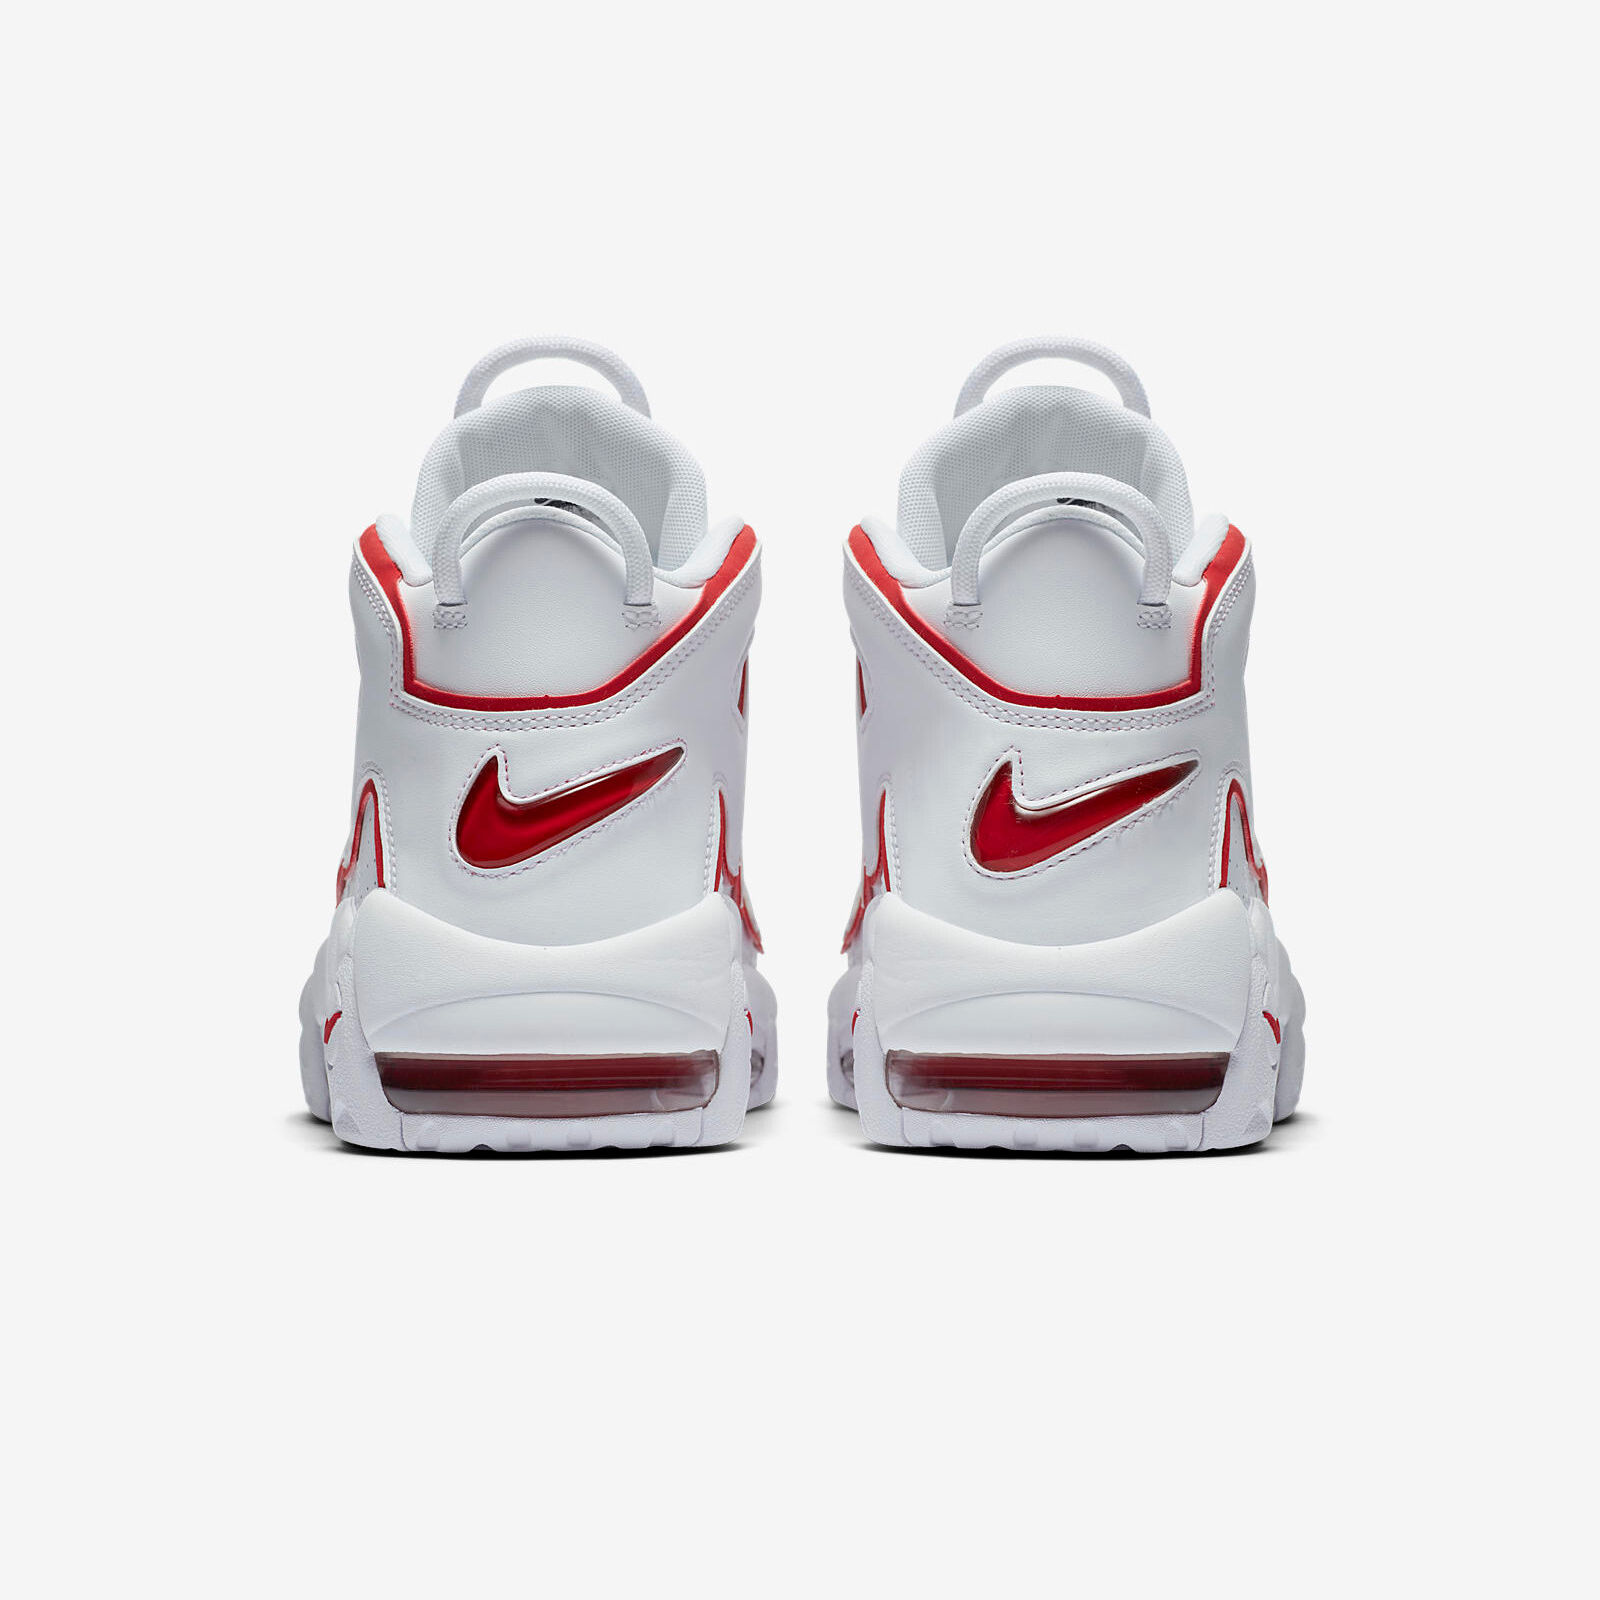 Nike Air More Uptempo ´96
White / Varsity Red